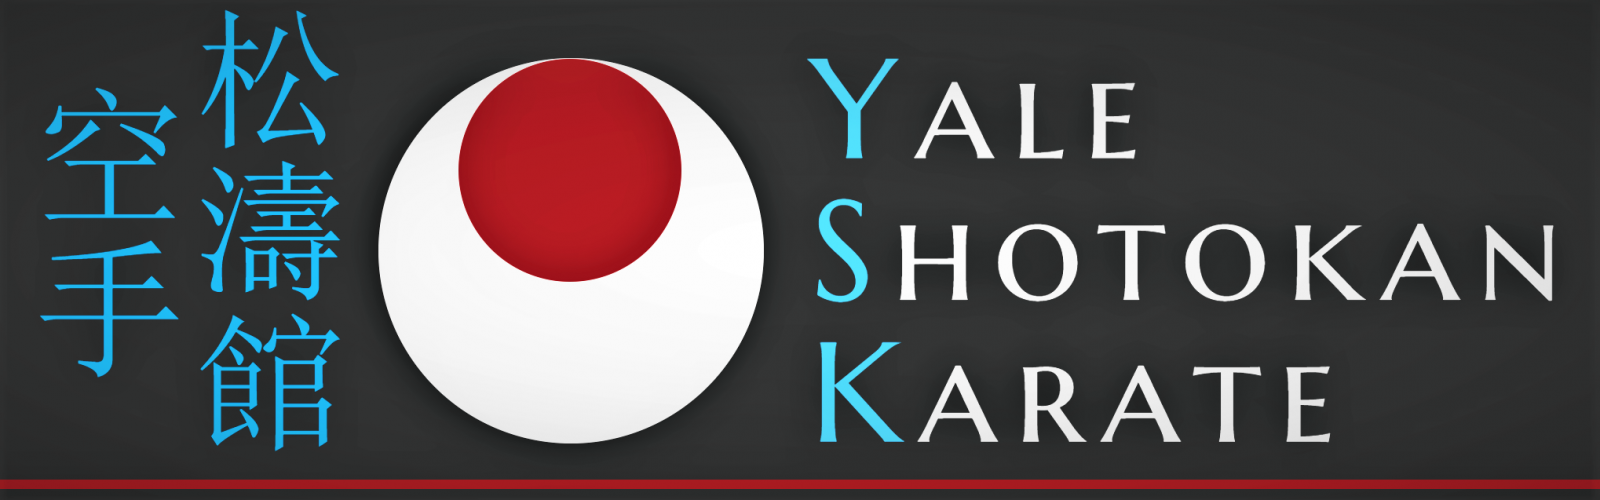 Yale Shotokan Karate Banner